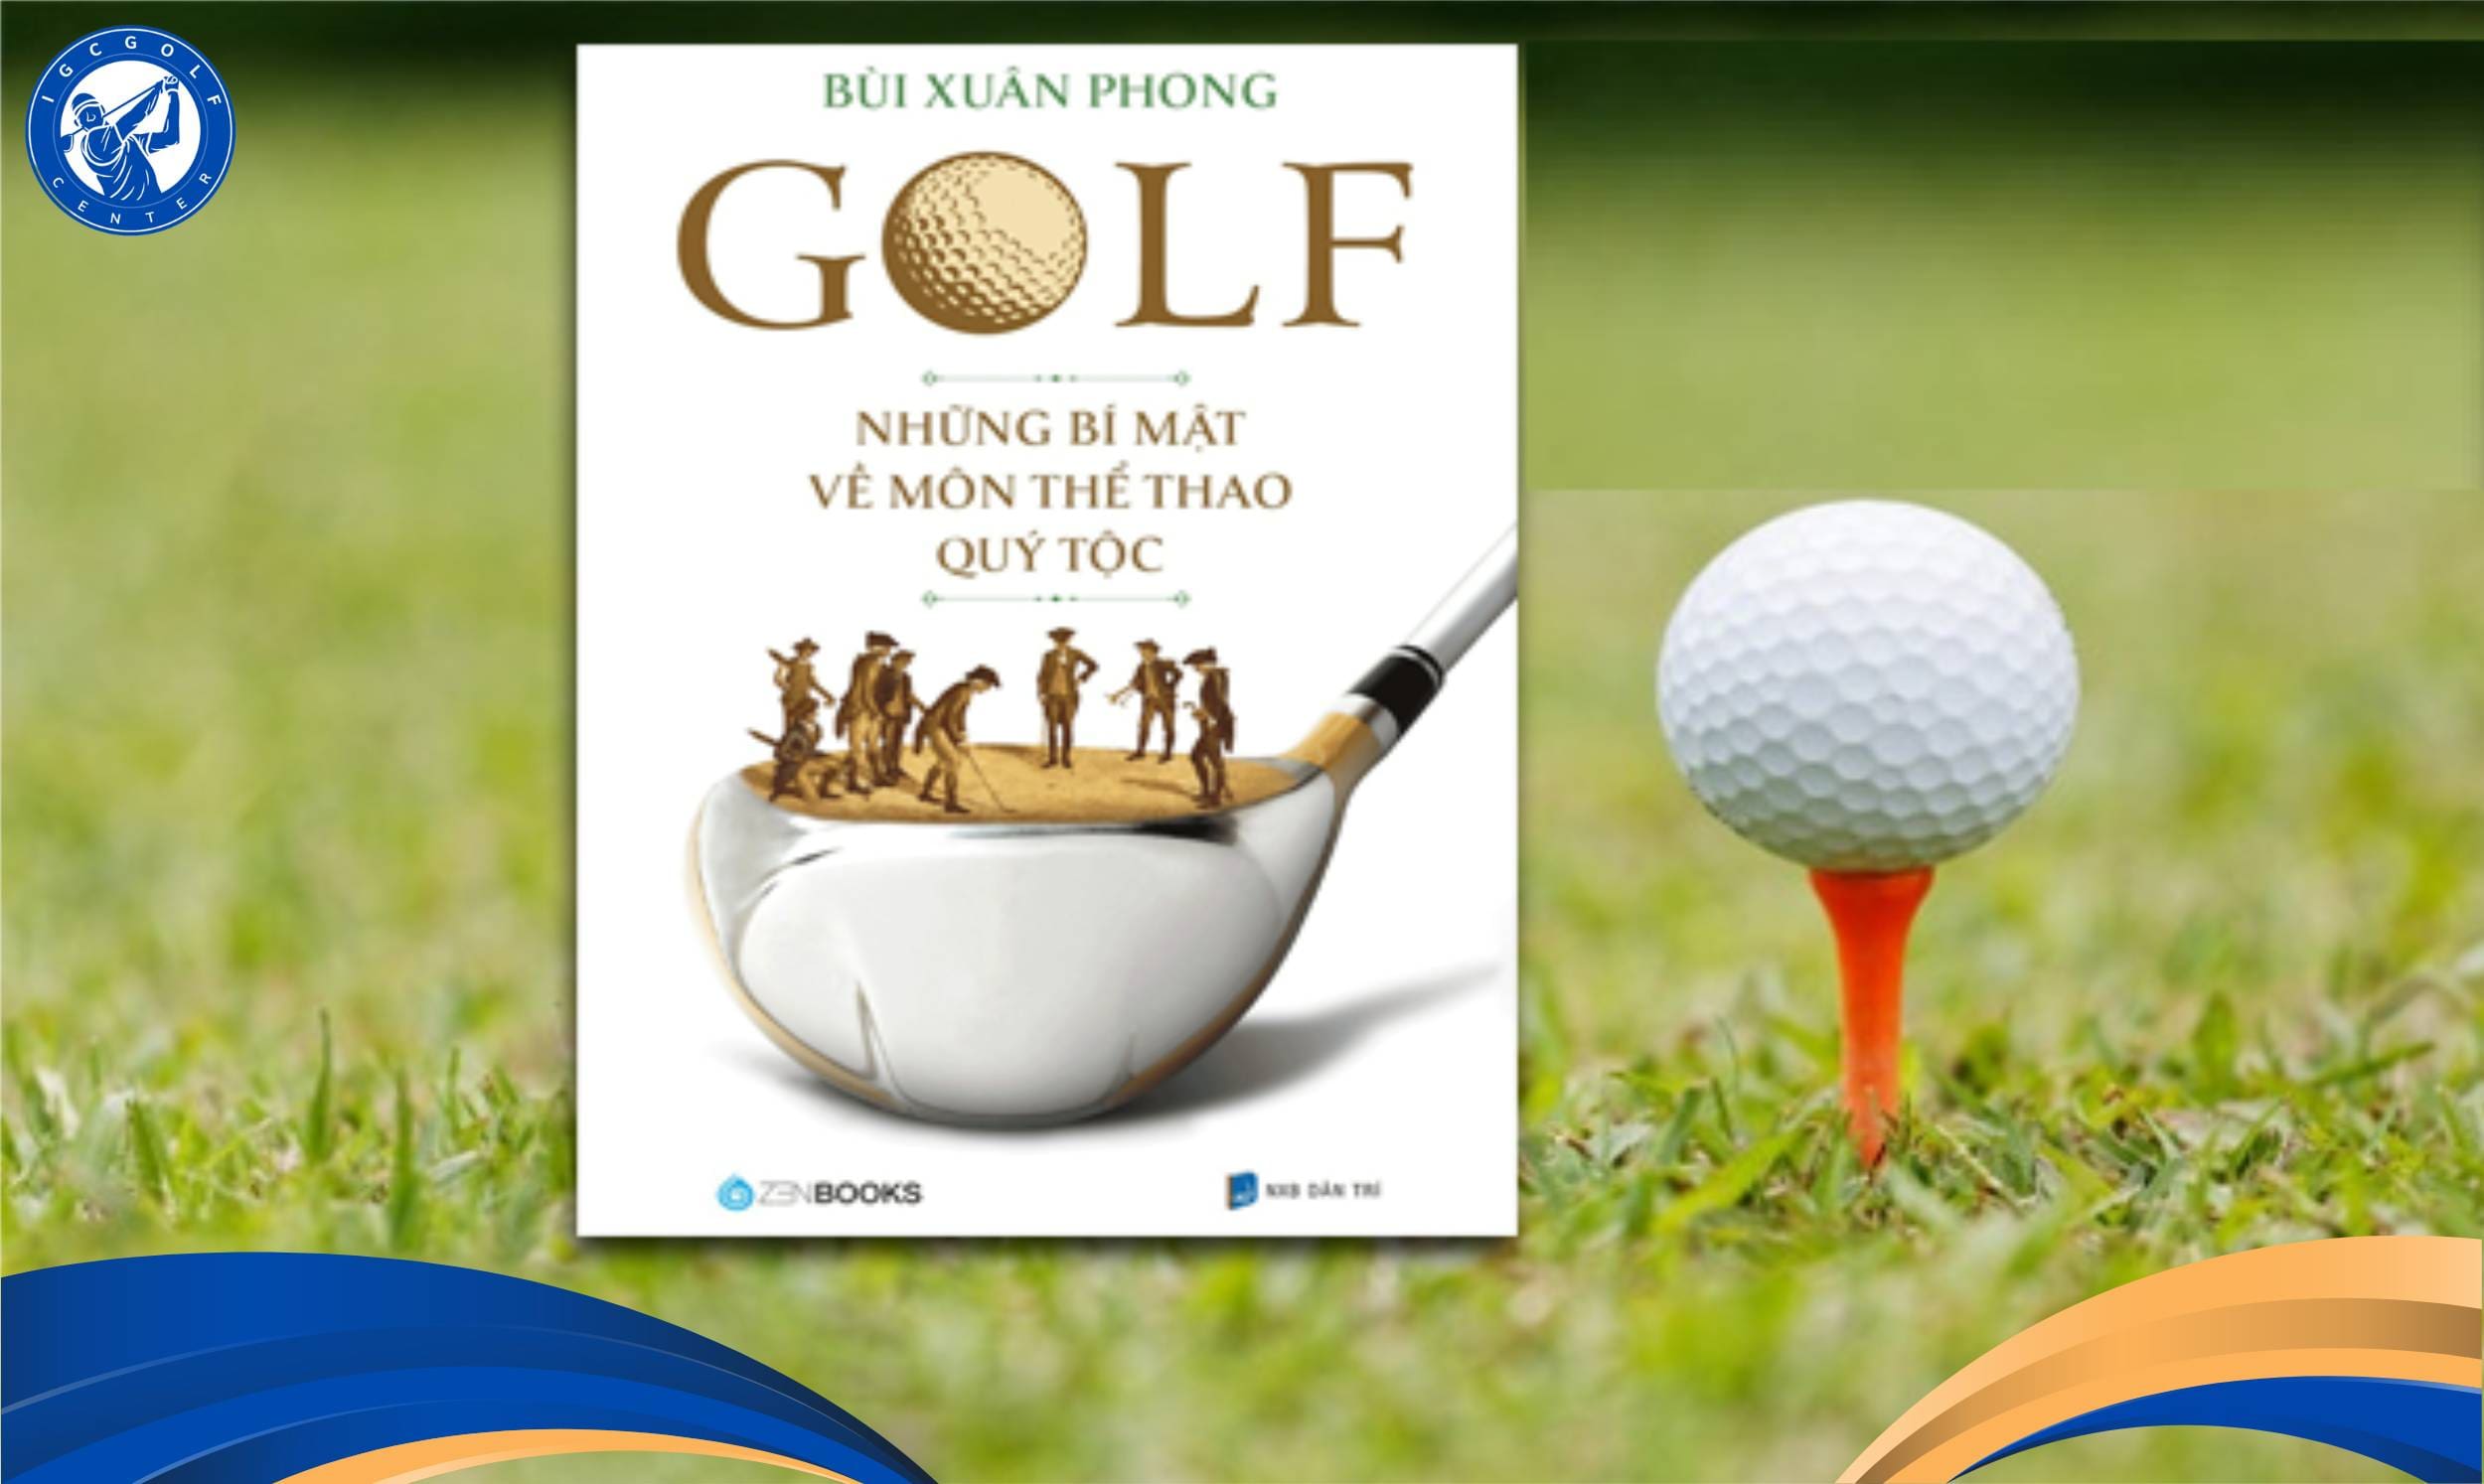 Tìm hiểu thông tin hữu ích về golf cùng Những bí mật về môn thể thao quý tộc